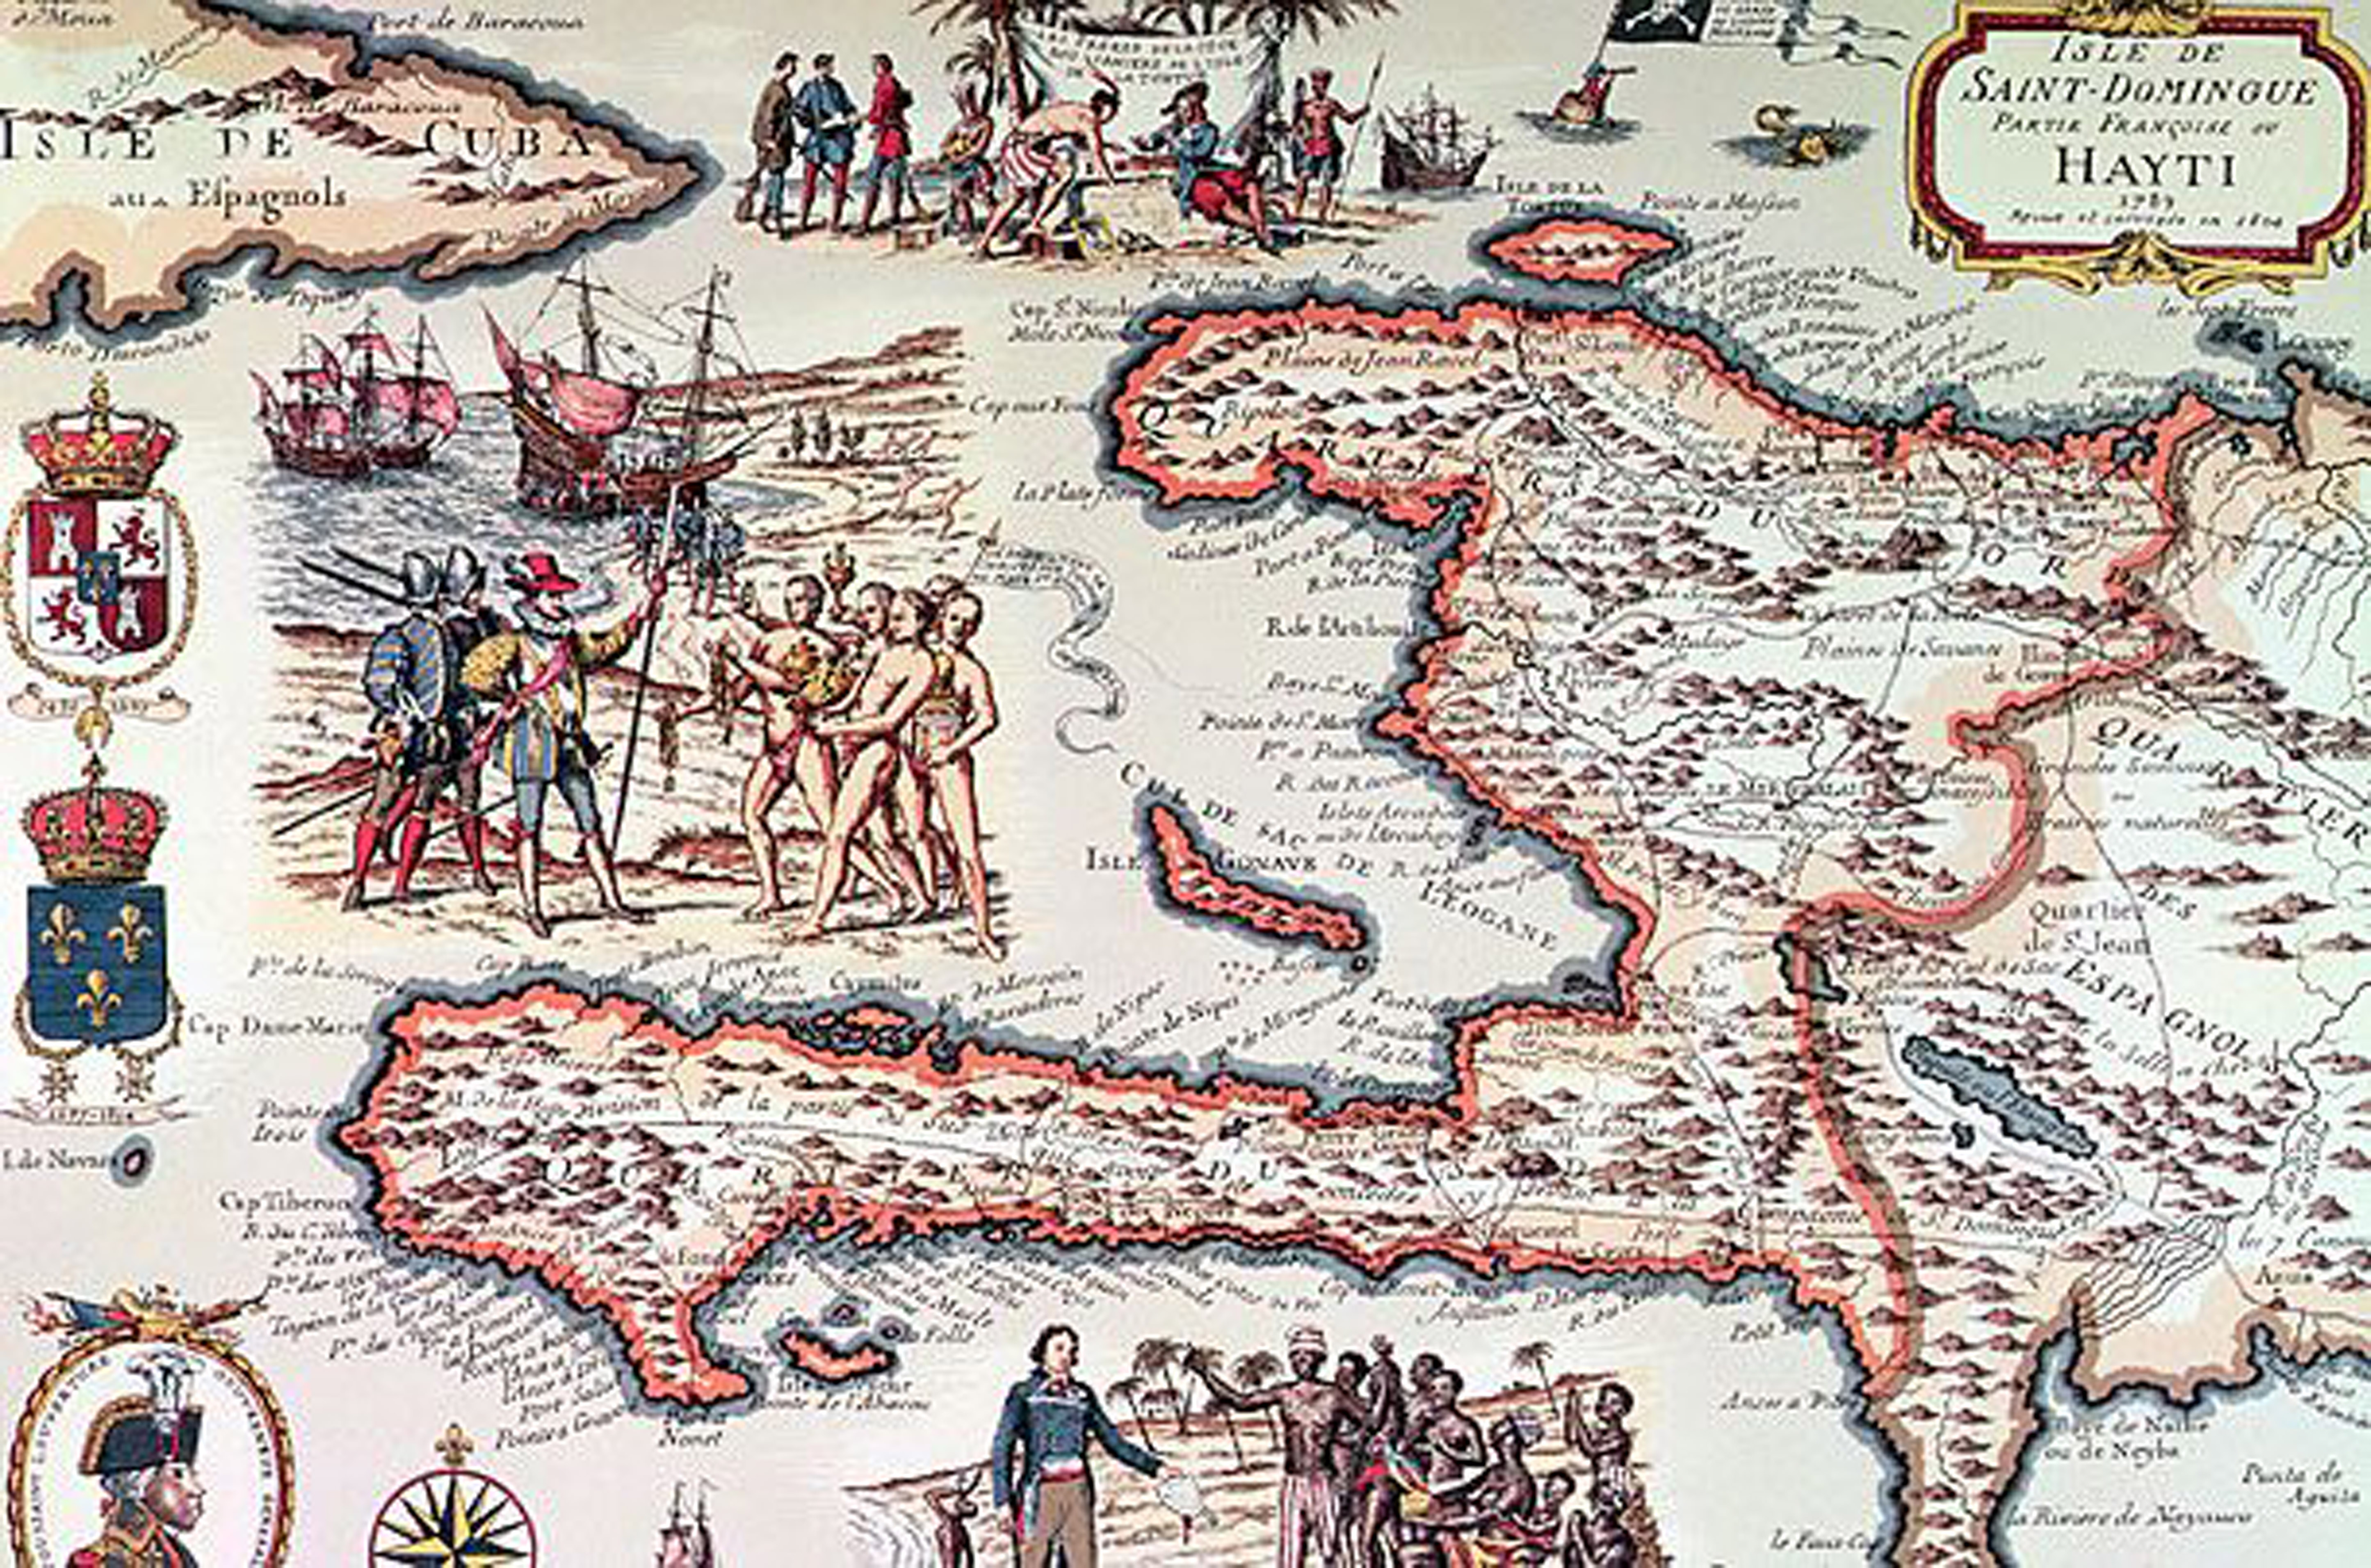 Historic map of Haiti and Tortuga along the north coast